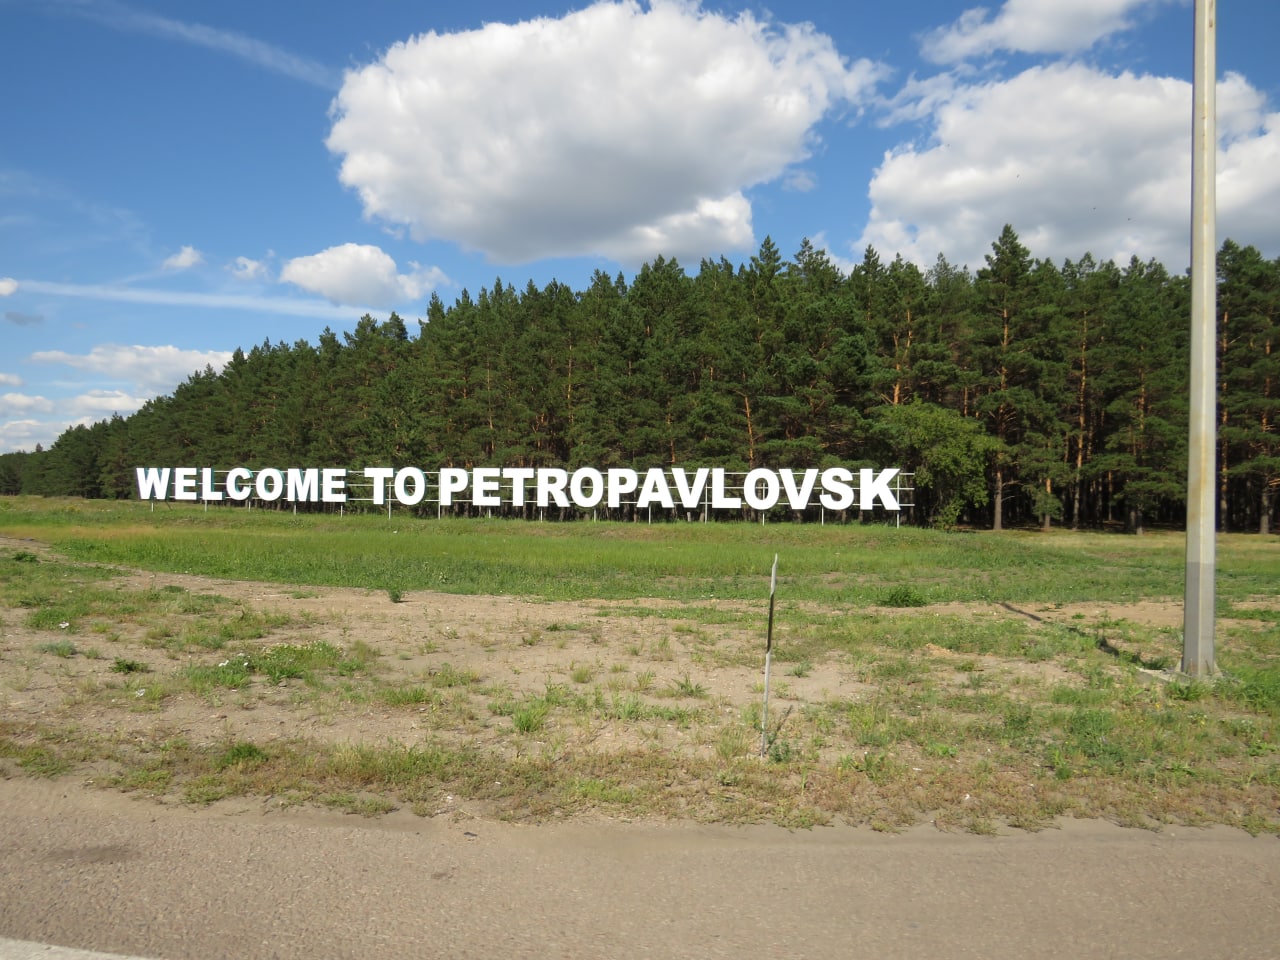 Загадка рынка недвижимости Петропавловска: россияне уехали, а цены не вернулись